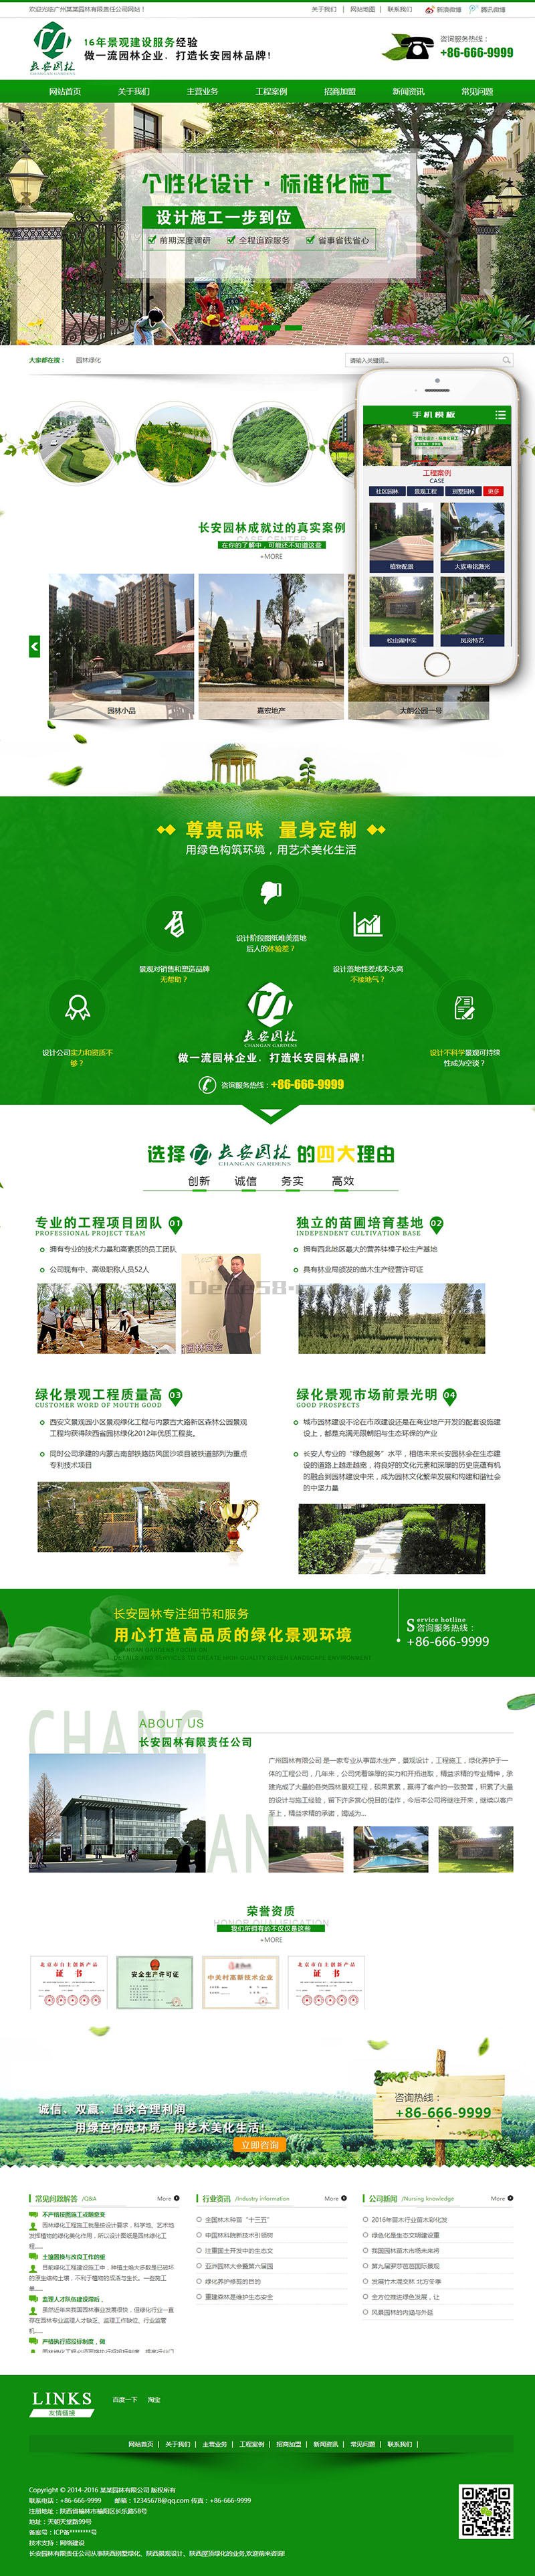 营销型绿色市政园林绿化类网站织梦模板(带手机端) 第1张